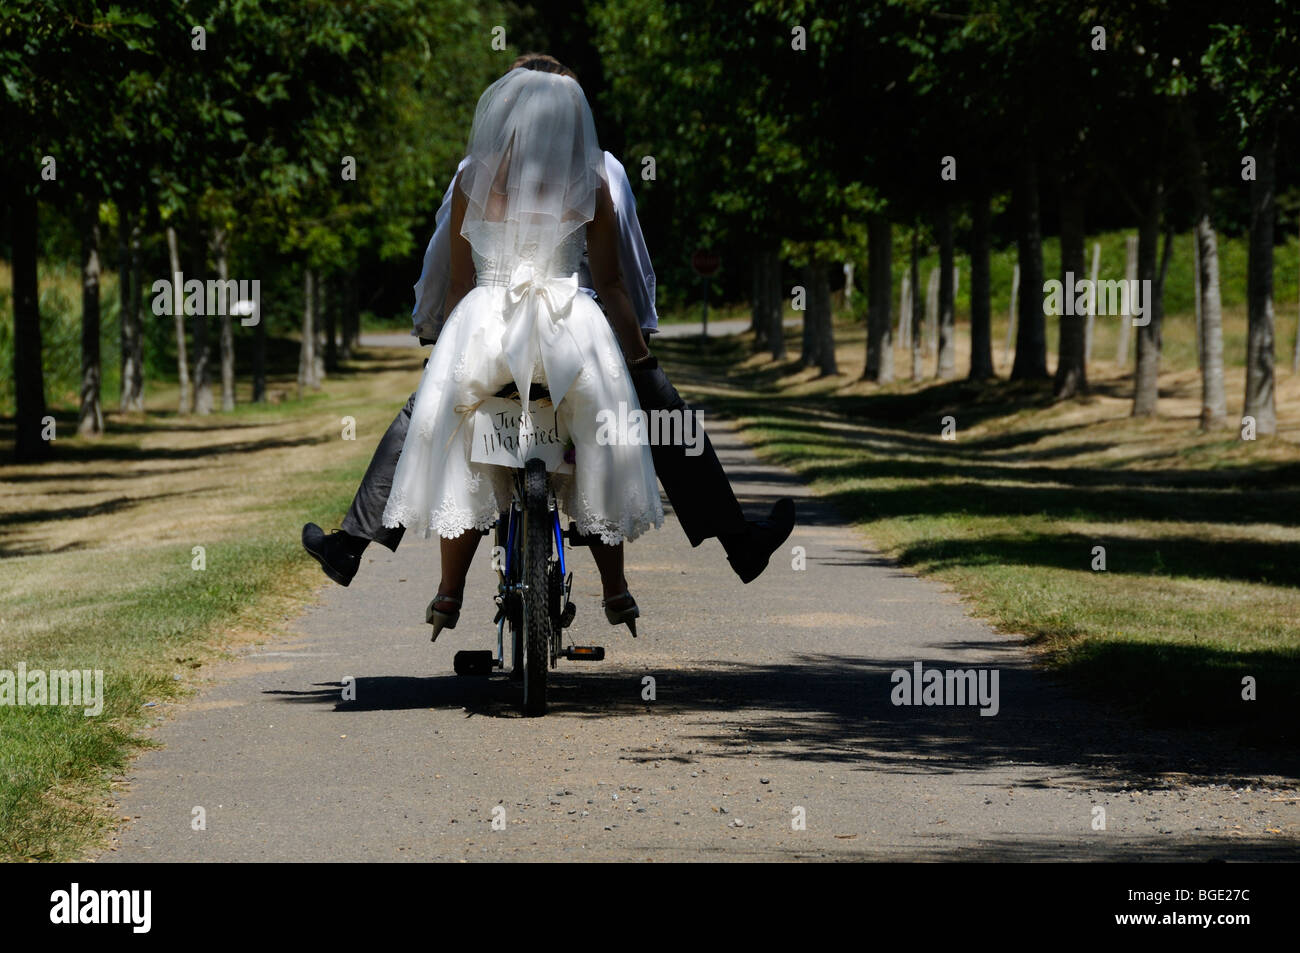 Auf der Rückseite des Zyklus geklebt Stock Foto von Braut und Bräutigam auf einem Tandem-Fahrrad mit den Worten, die gerade geheiratet. Stockfoto